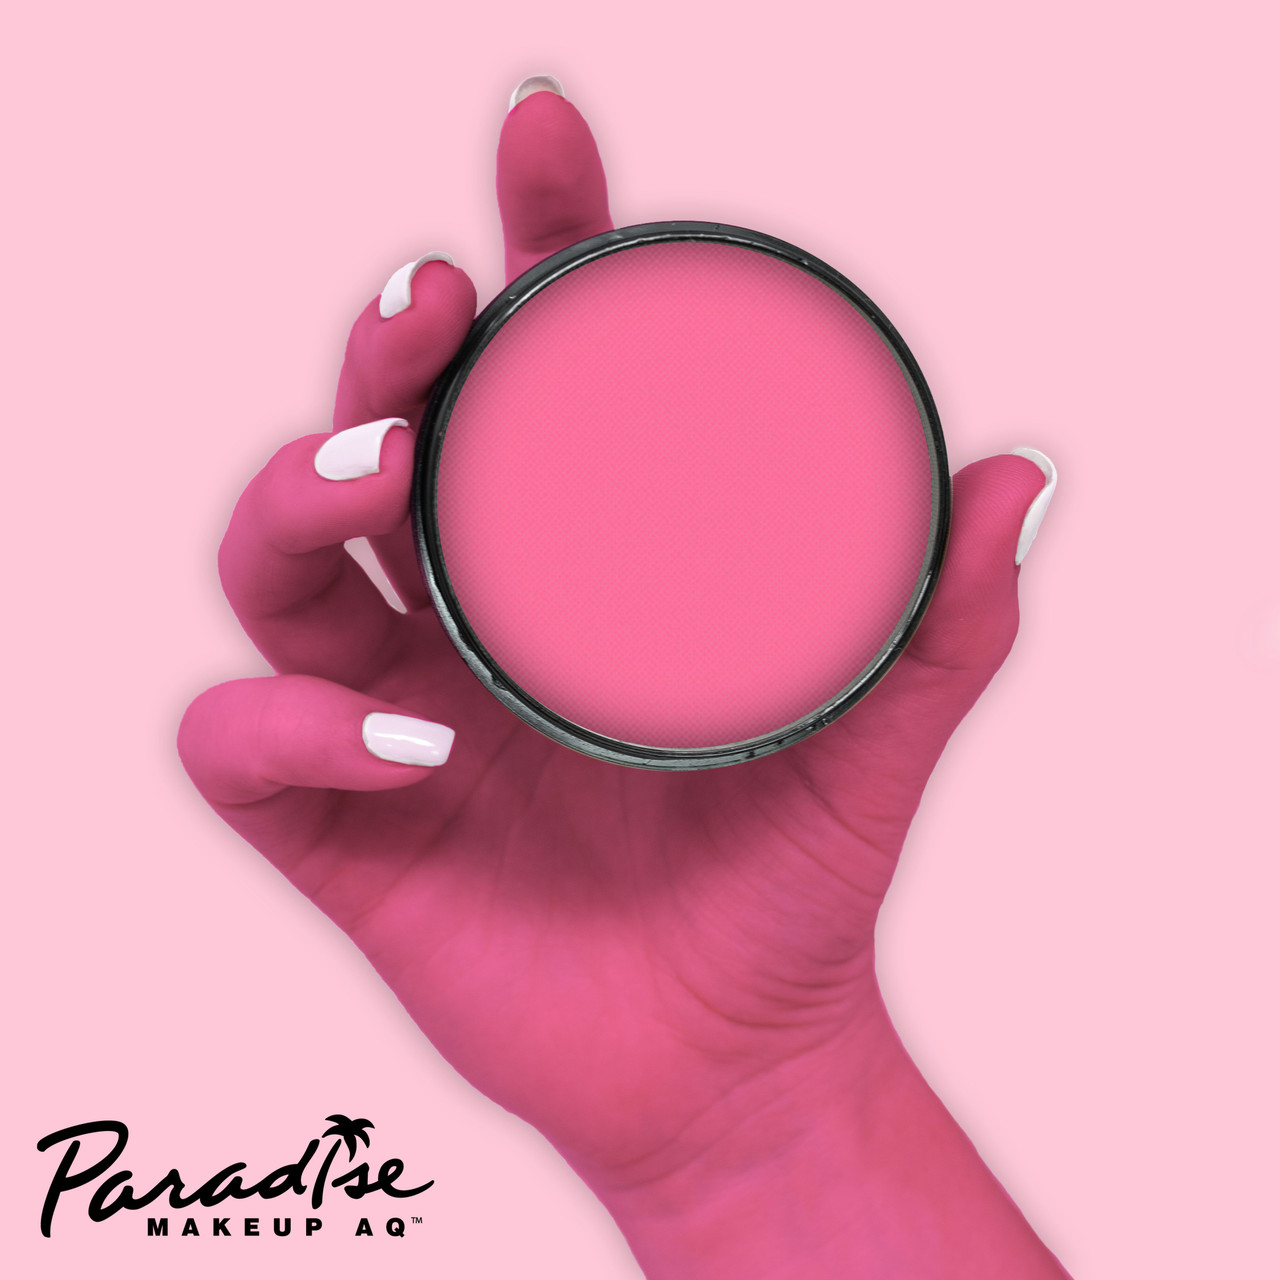 Mehron Paradise Makeup Light Pink (40 gram)